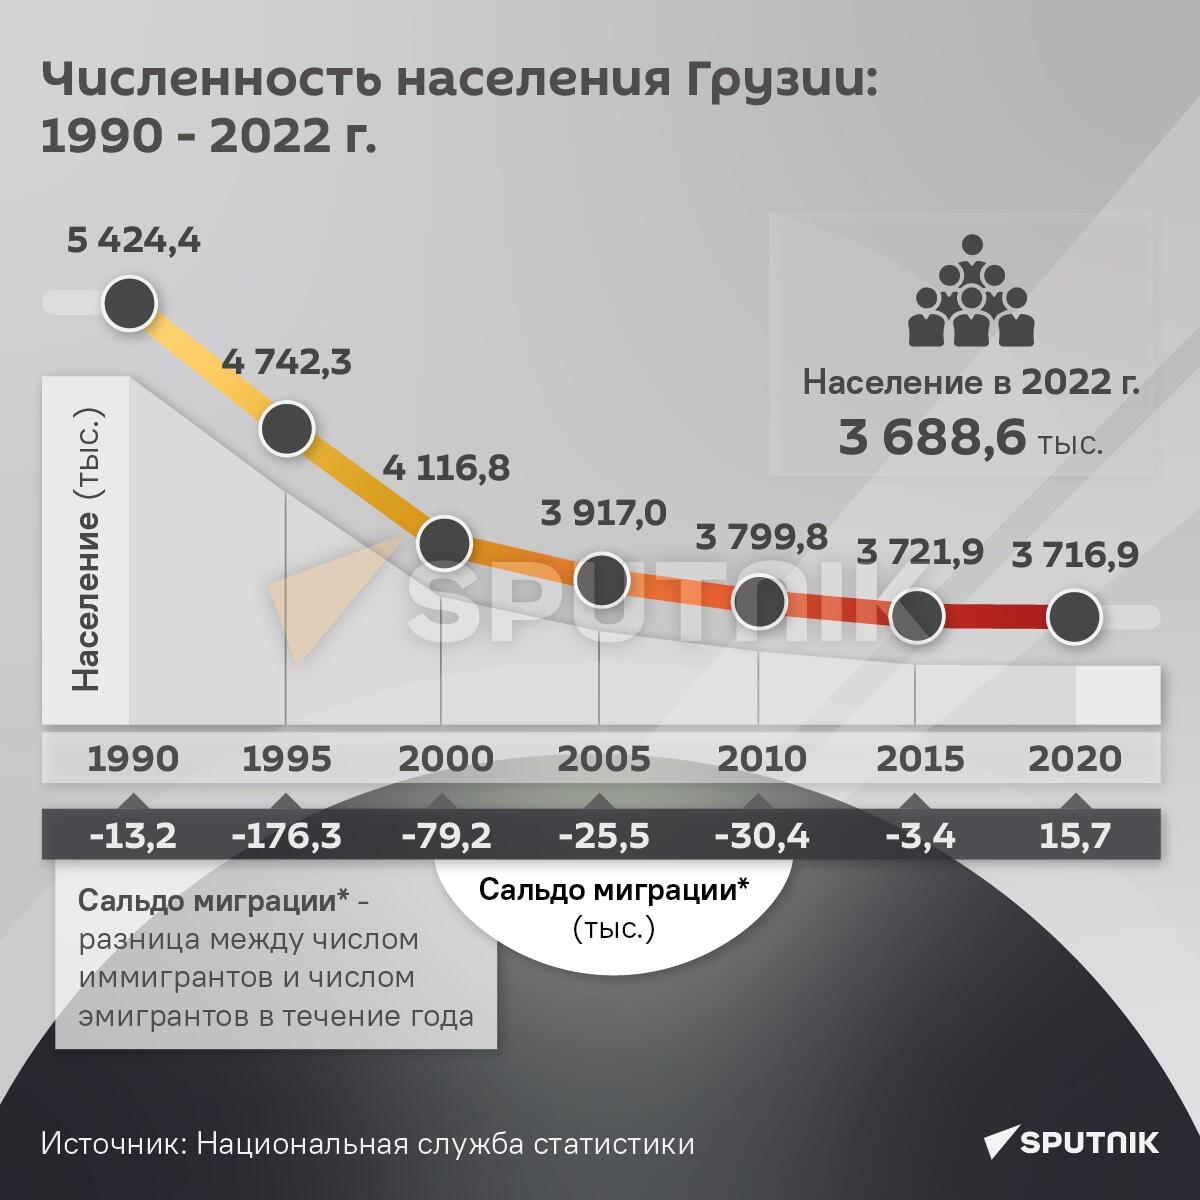 Численность населения Грузии: 1990 - 2022 годы - Sputnik Грузия